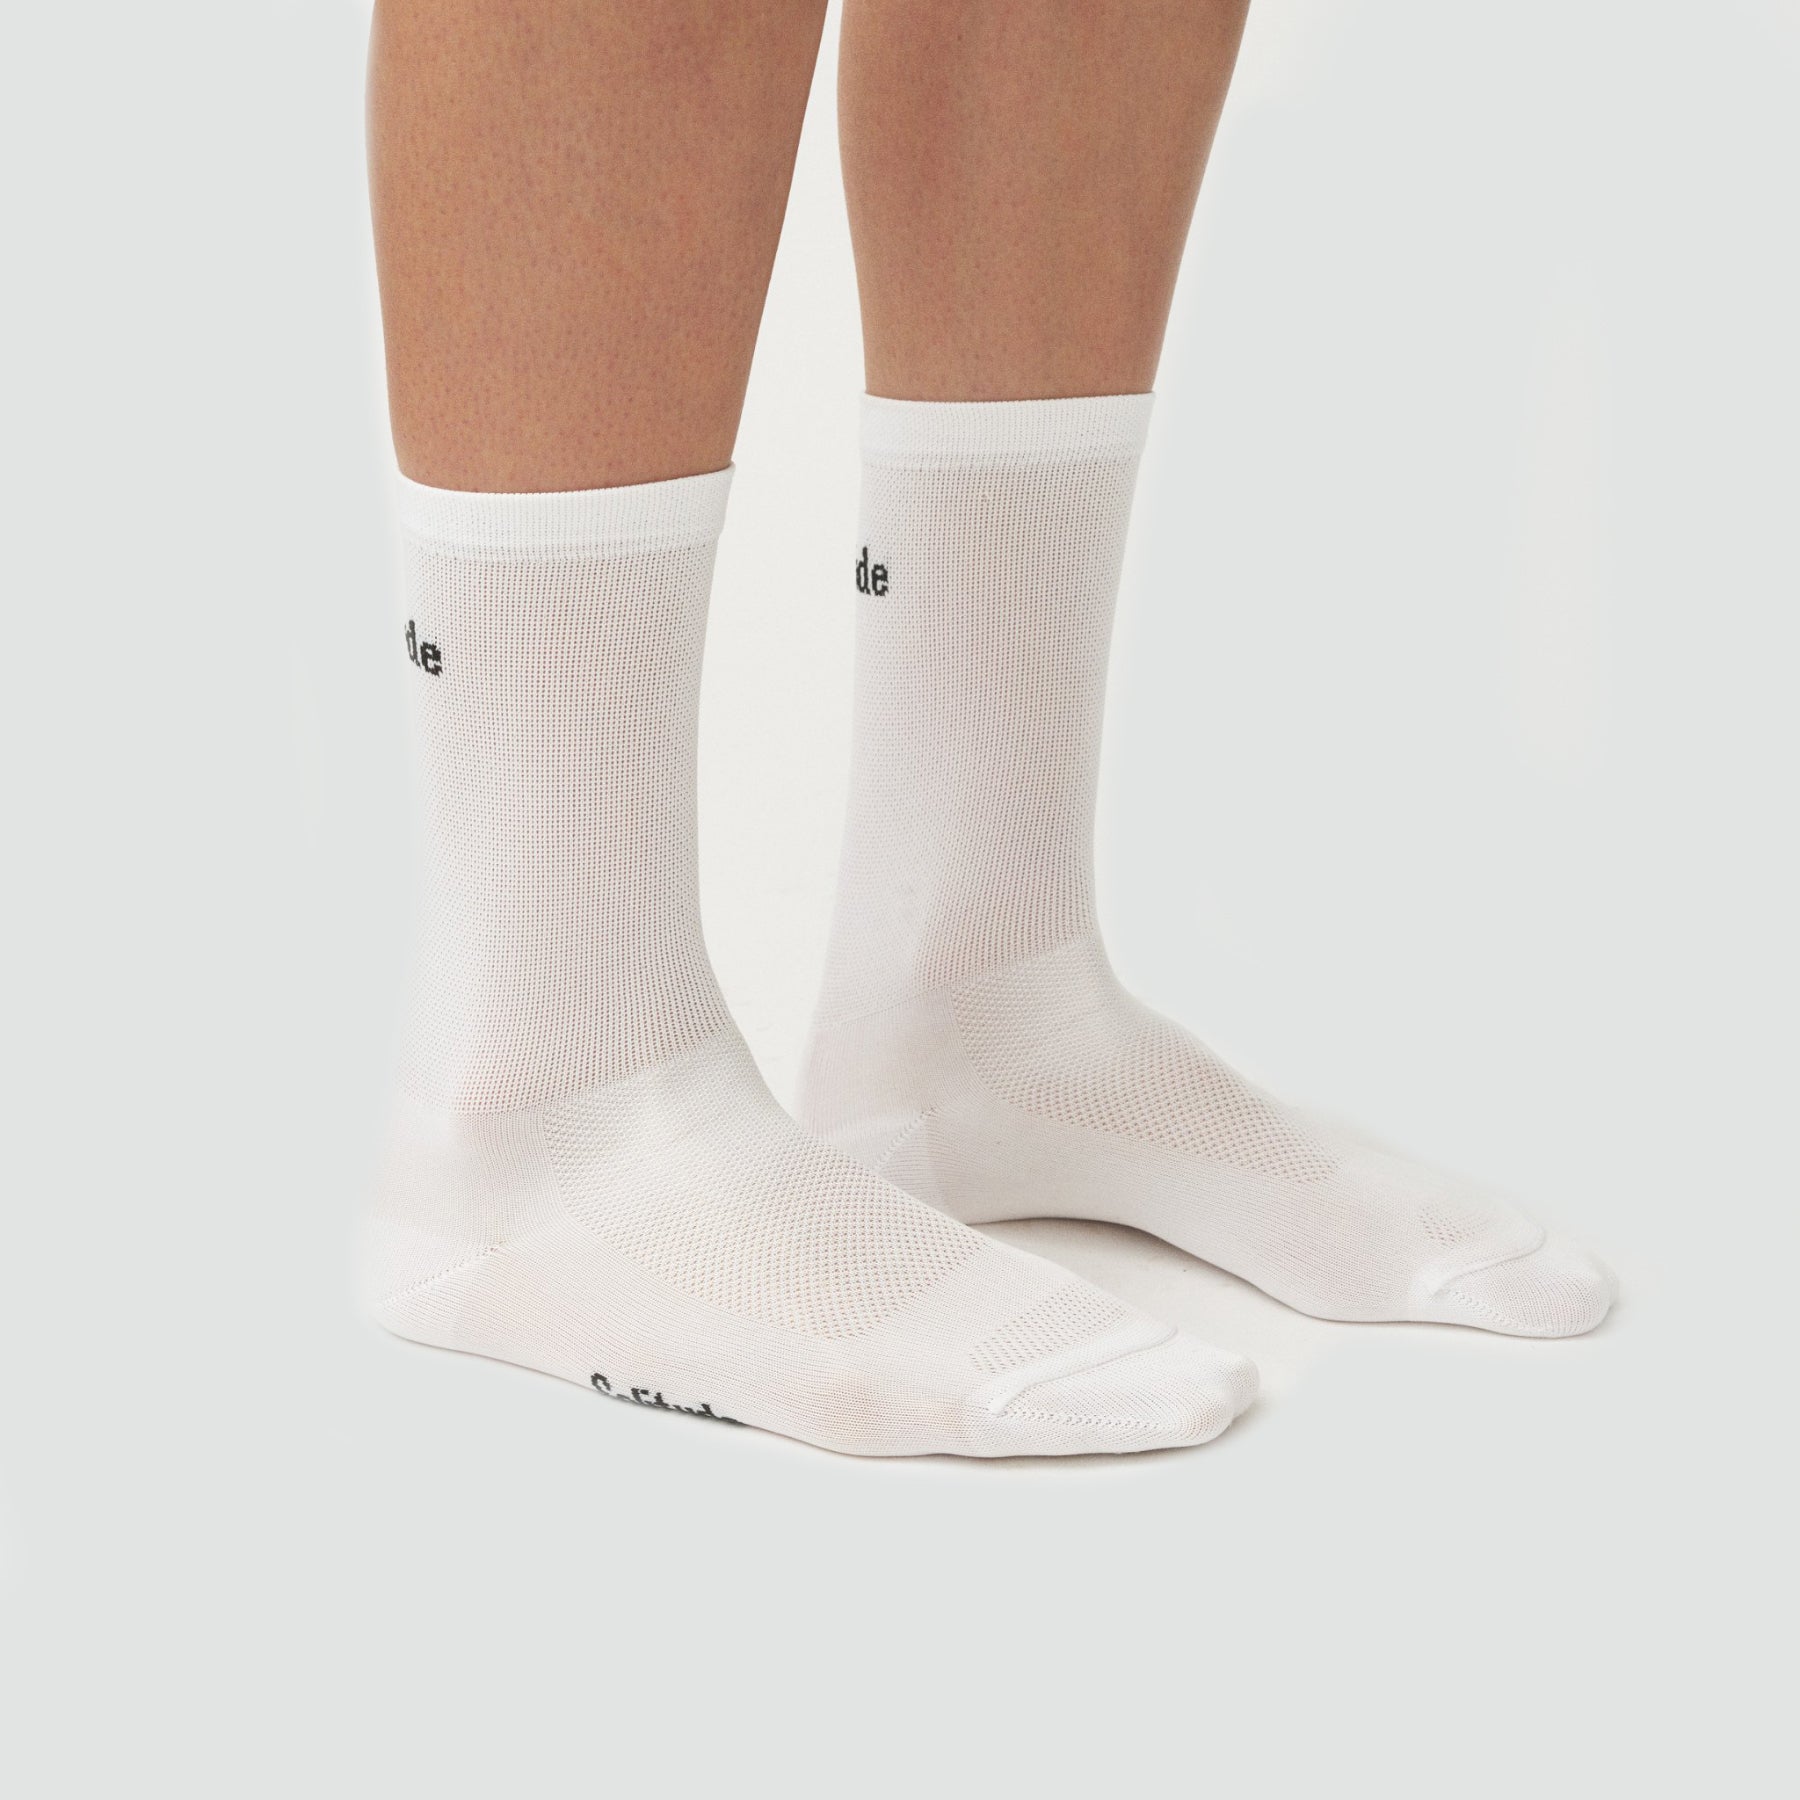 孤獨襪子 - 白色